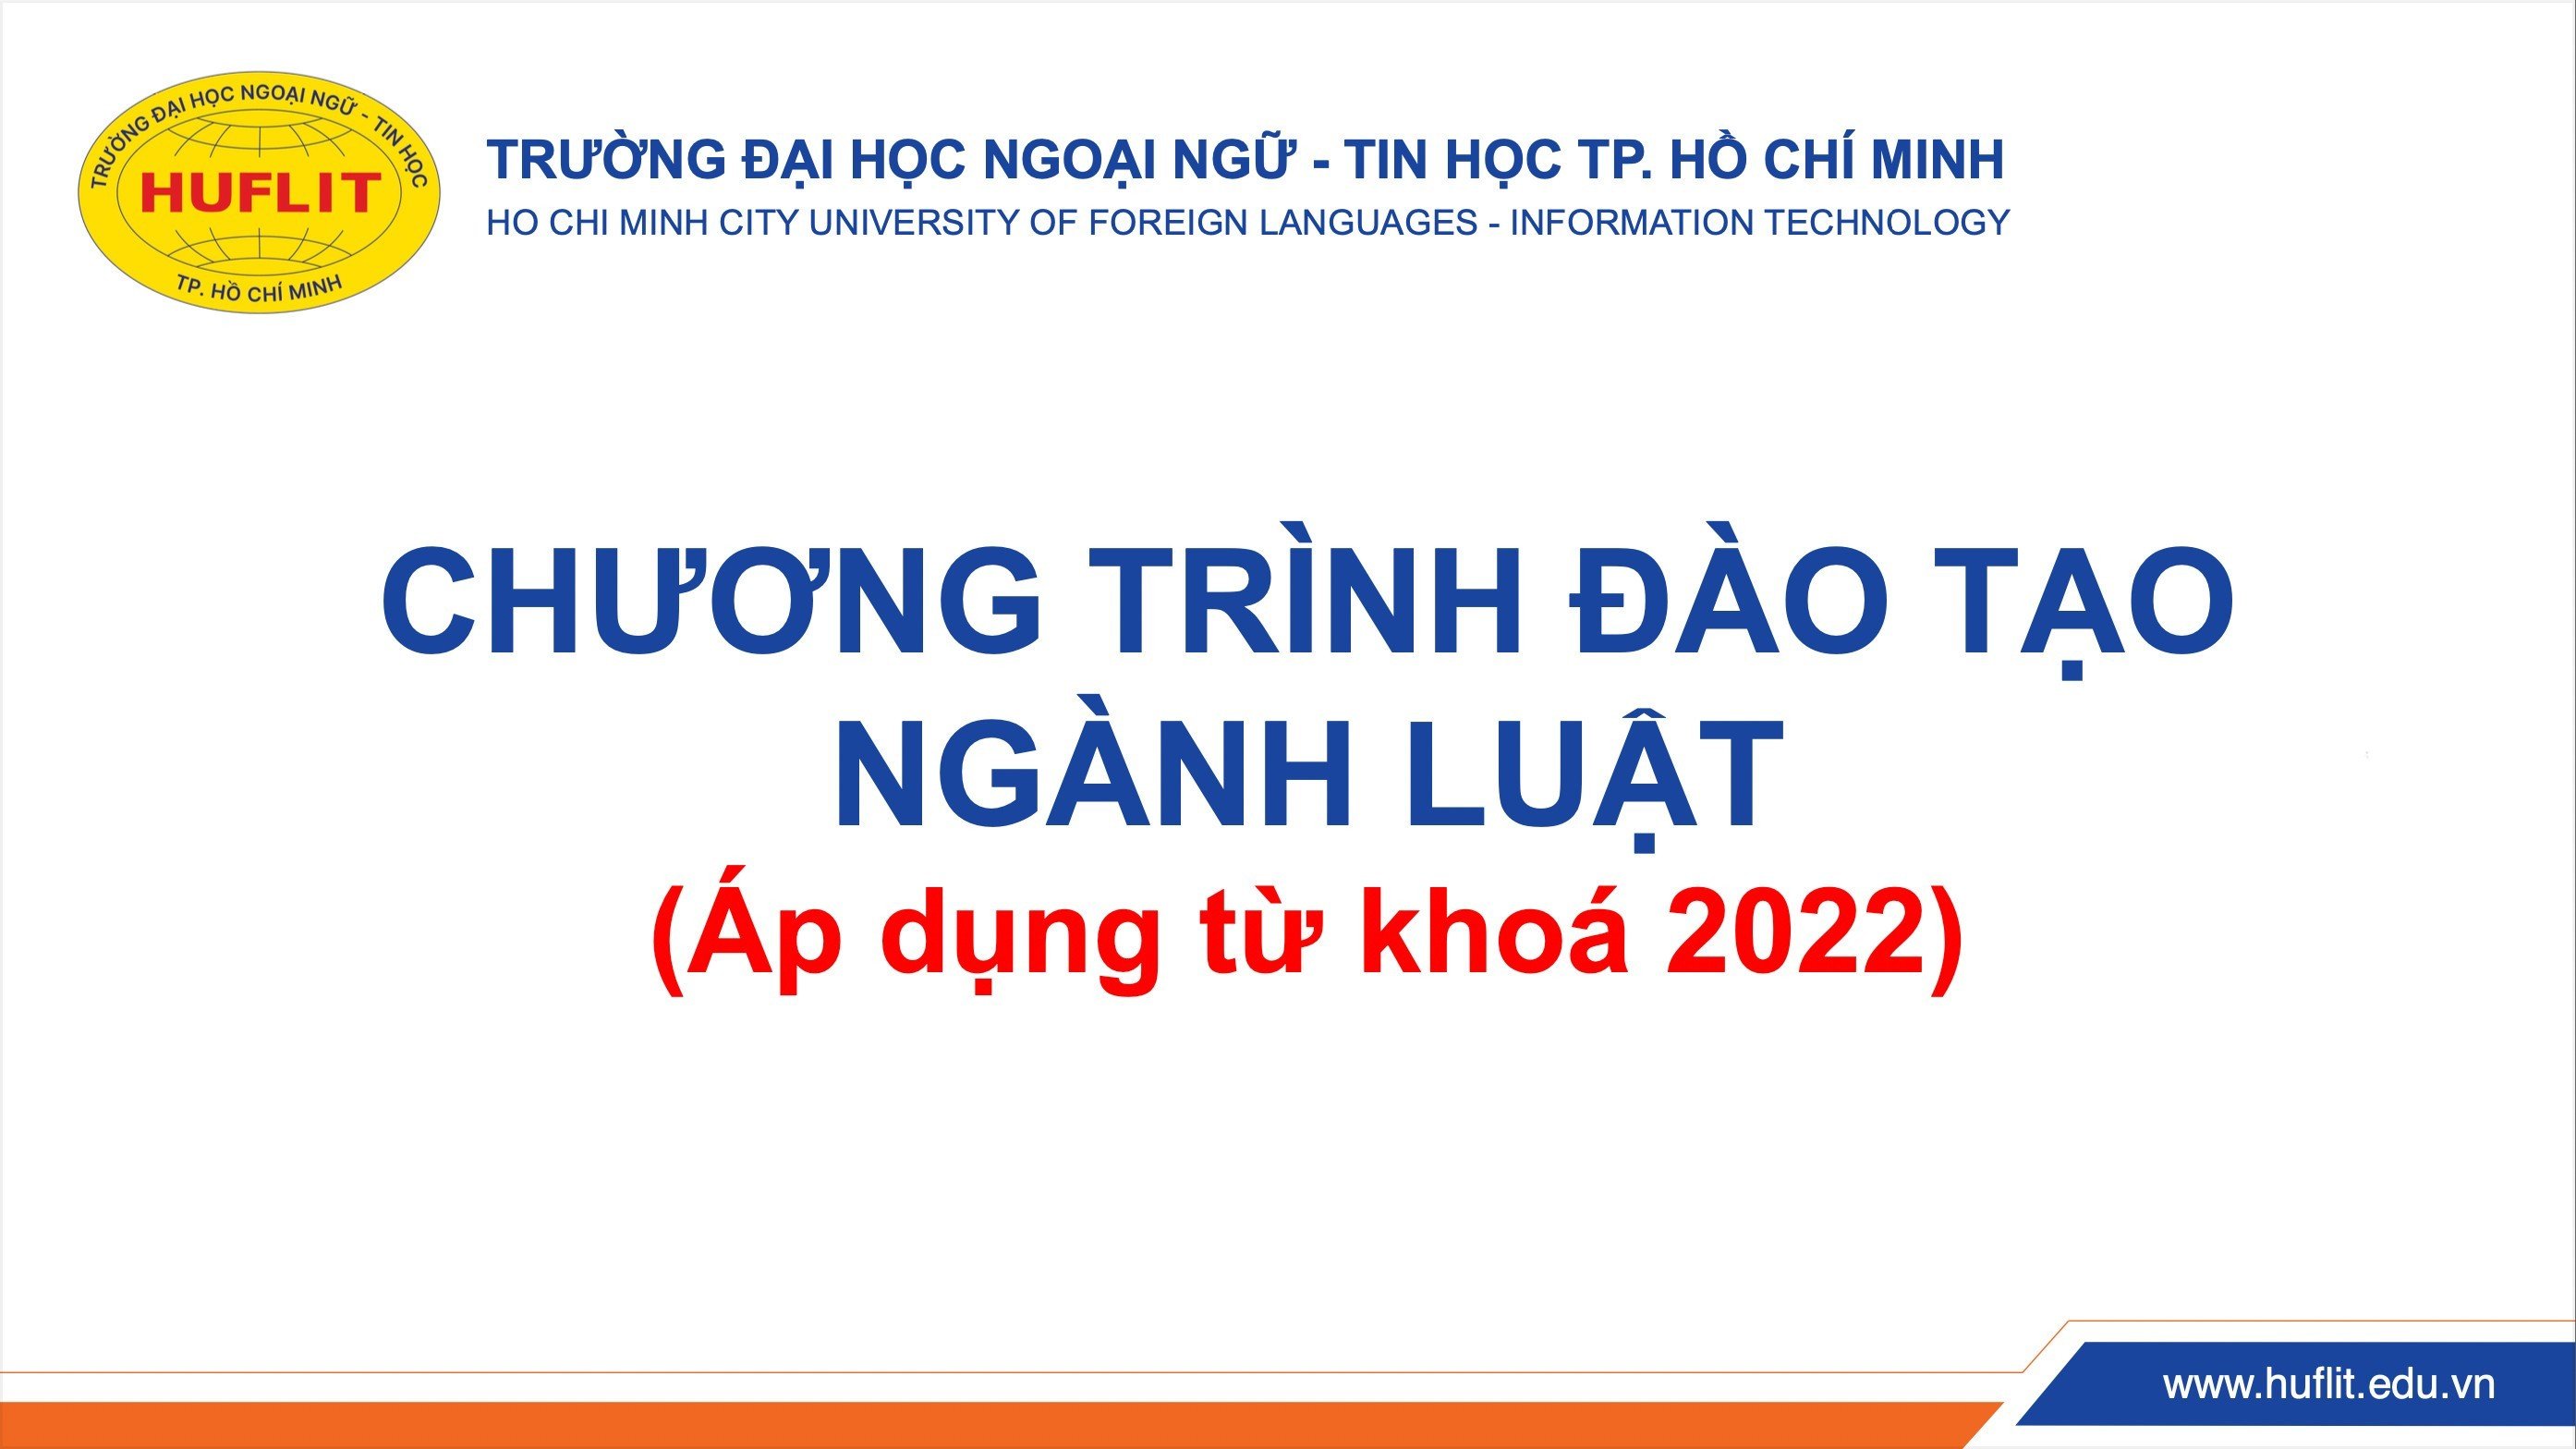 CHUONG TRINH DAO TAO NGANH LKT 2022